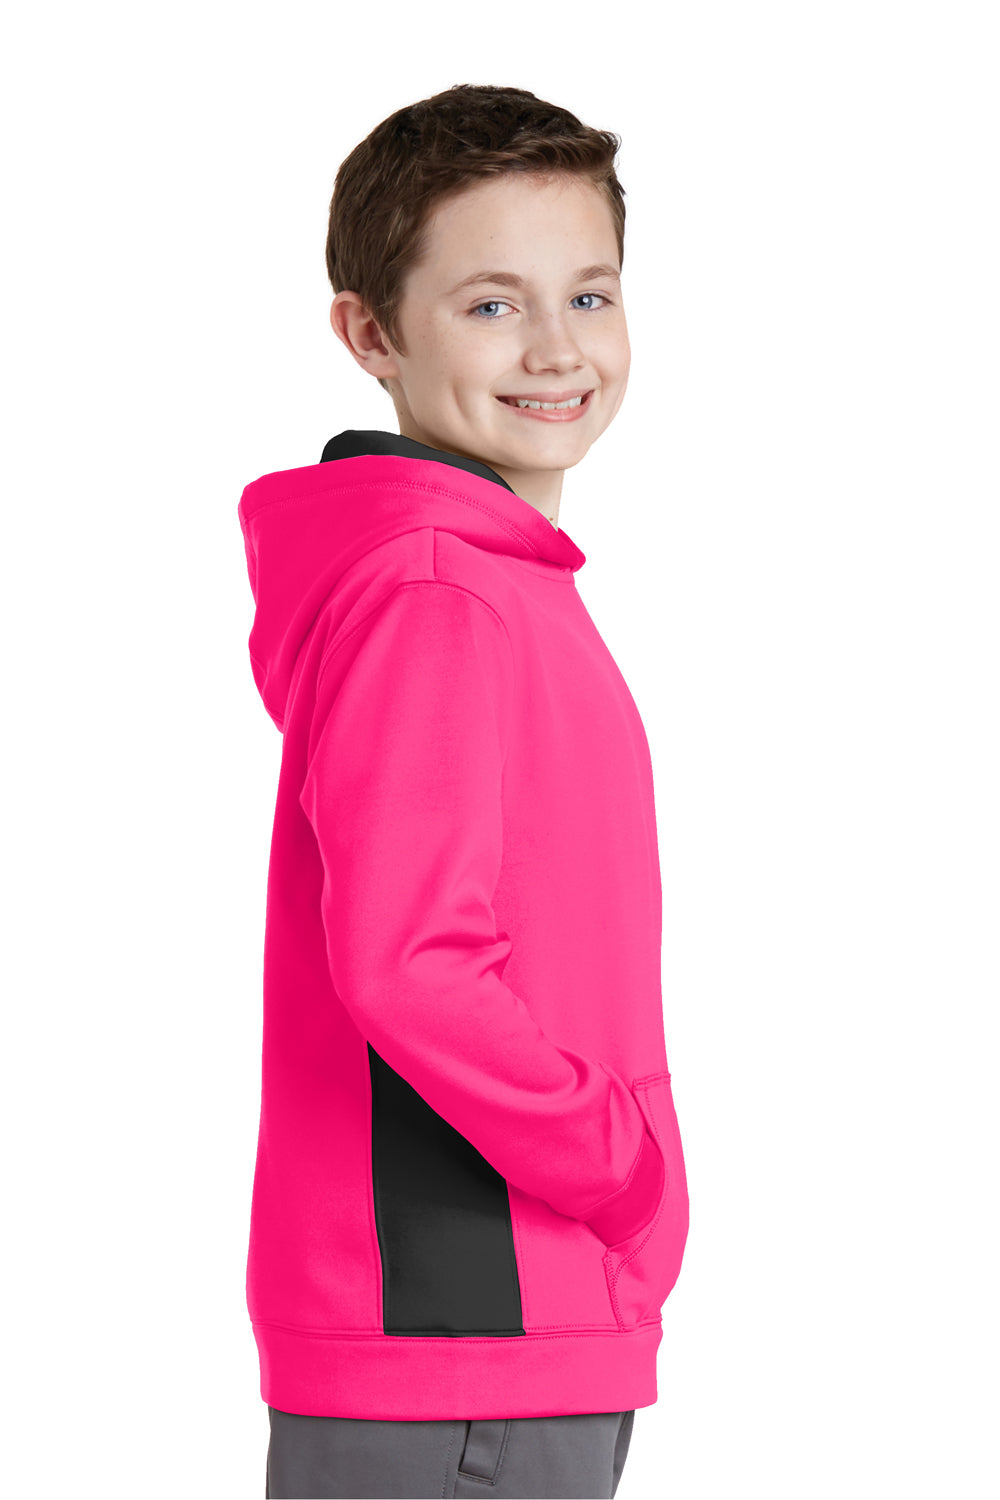 Sport-Tek YST235 Youth Sport-Wick Moisture Wicking Fleece Hooded Sweatshirt Hoodie Neon Pink/Black Side